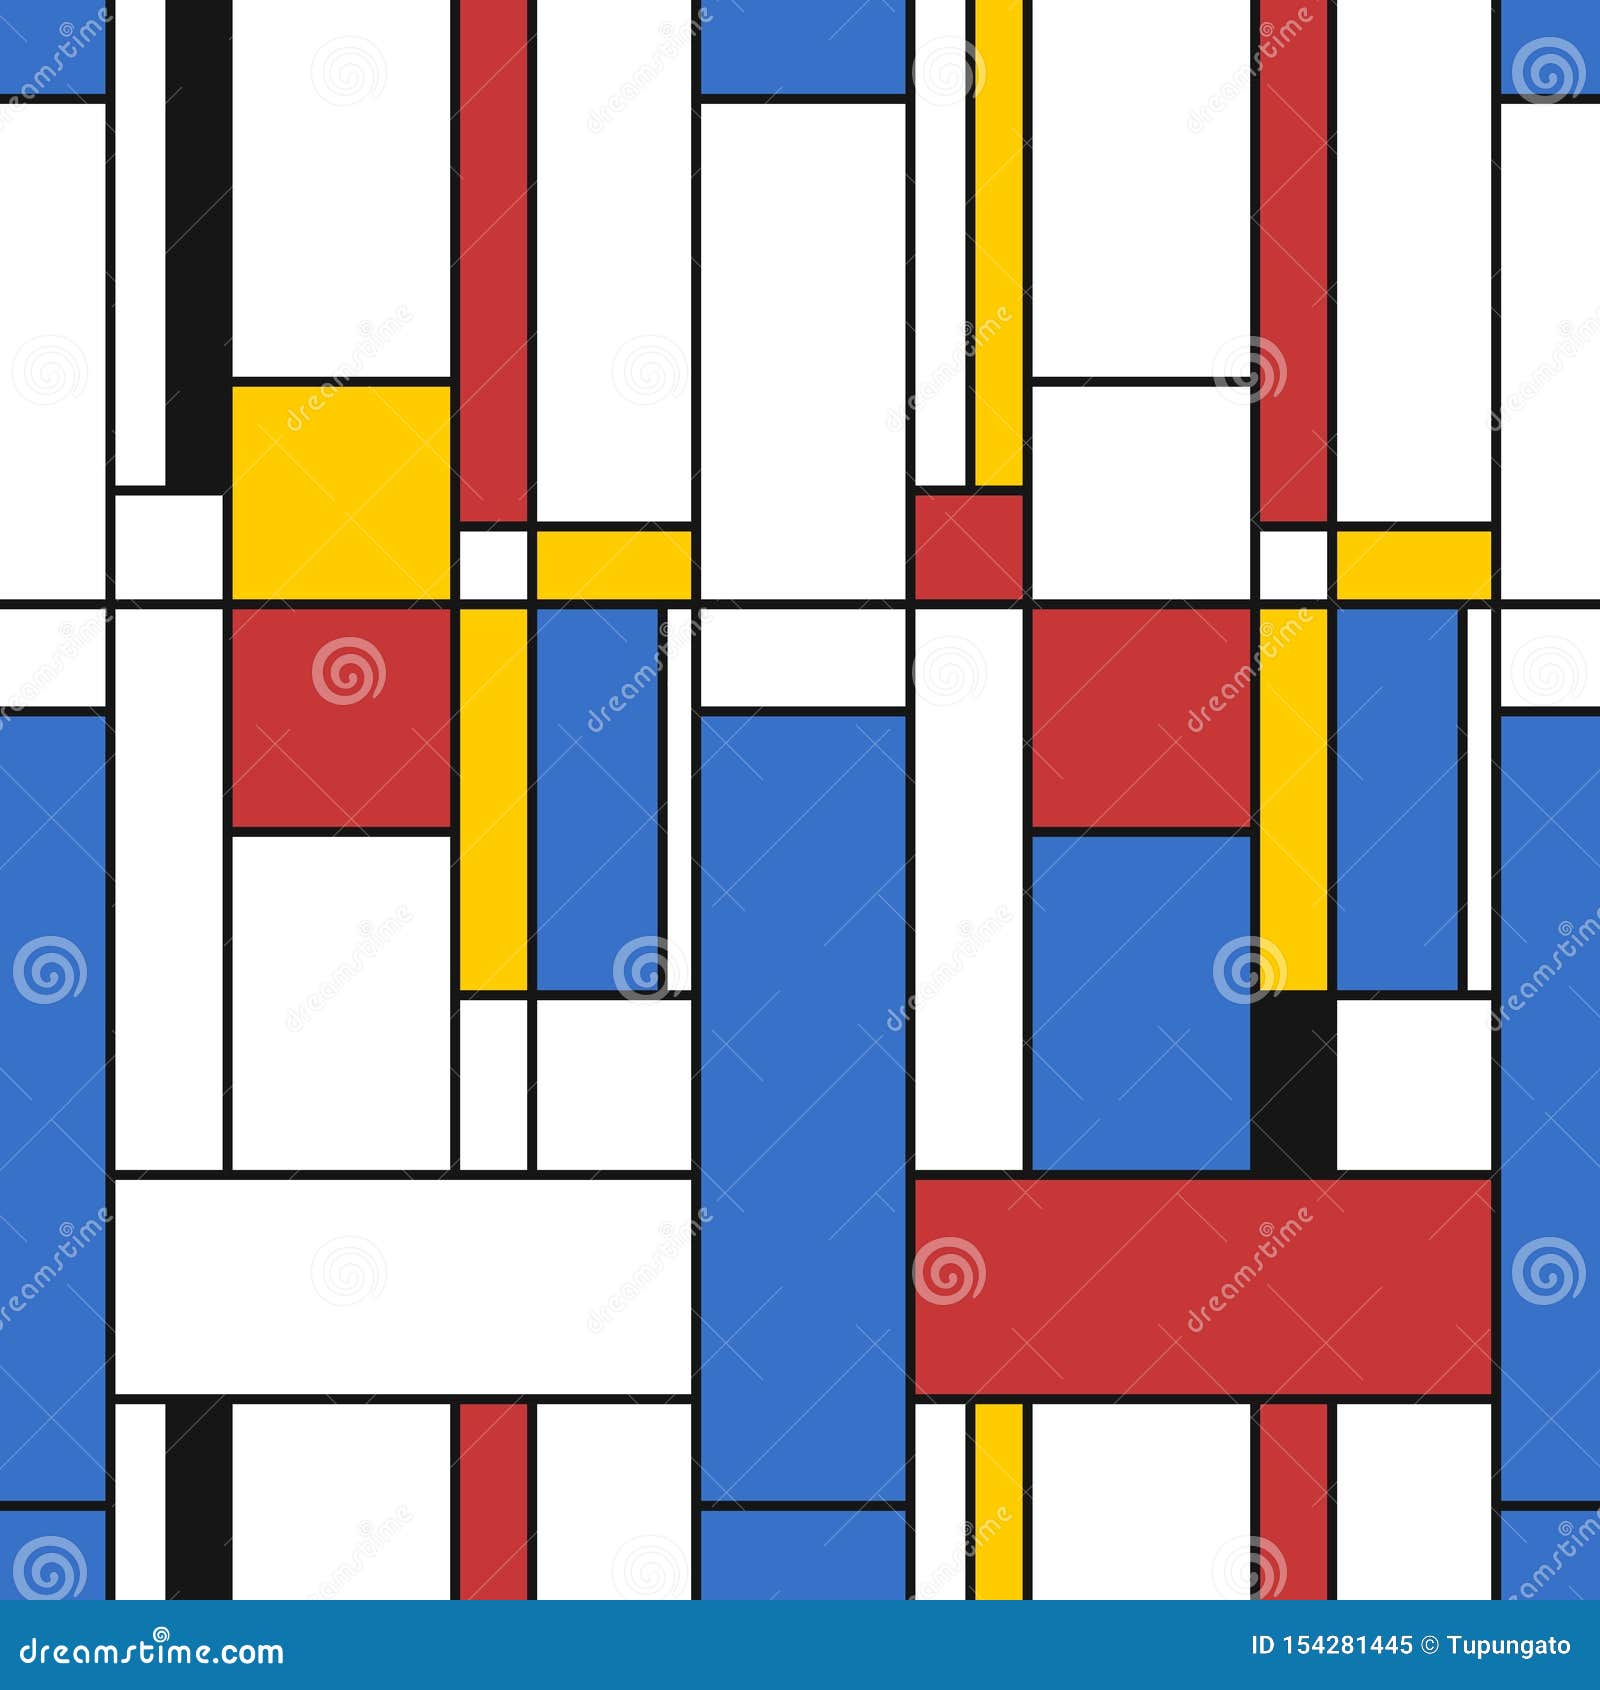 Mondrian style texture stock vector. Illustration of design - 154281445